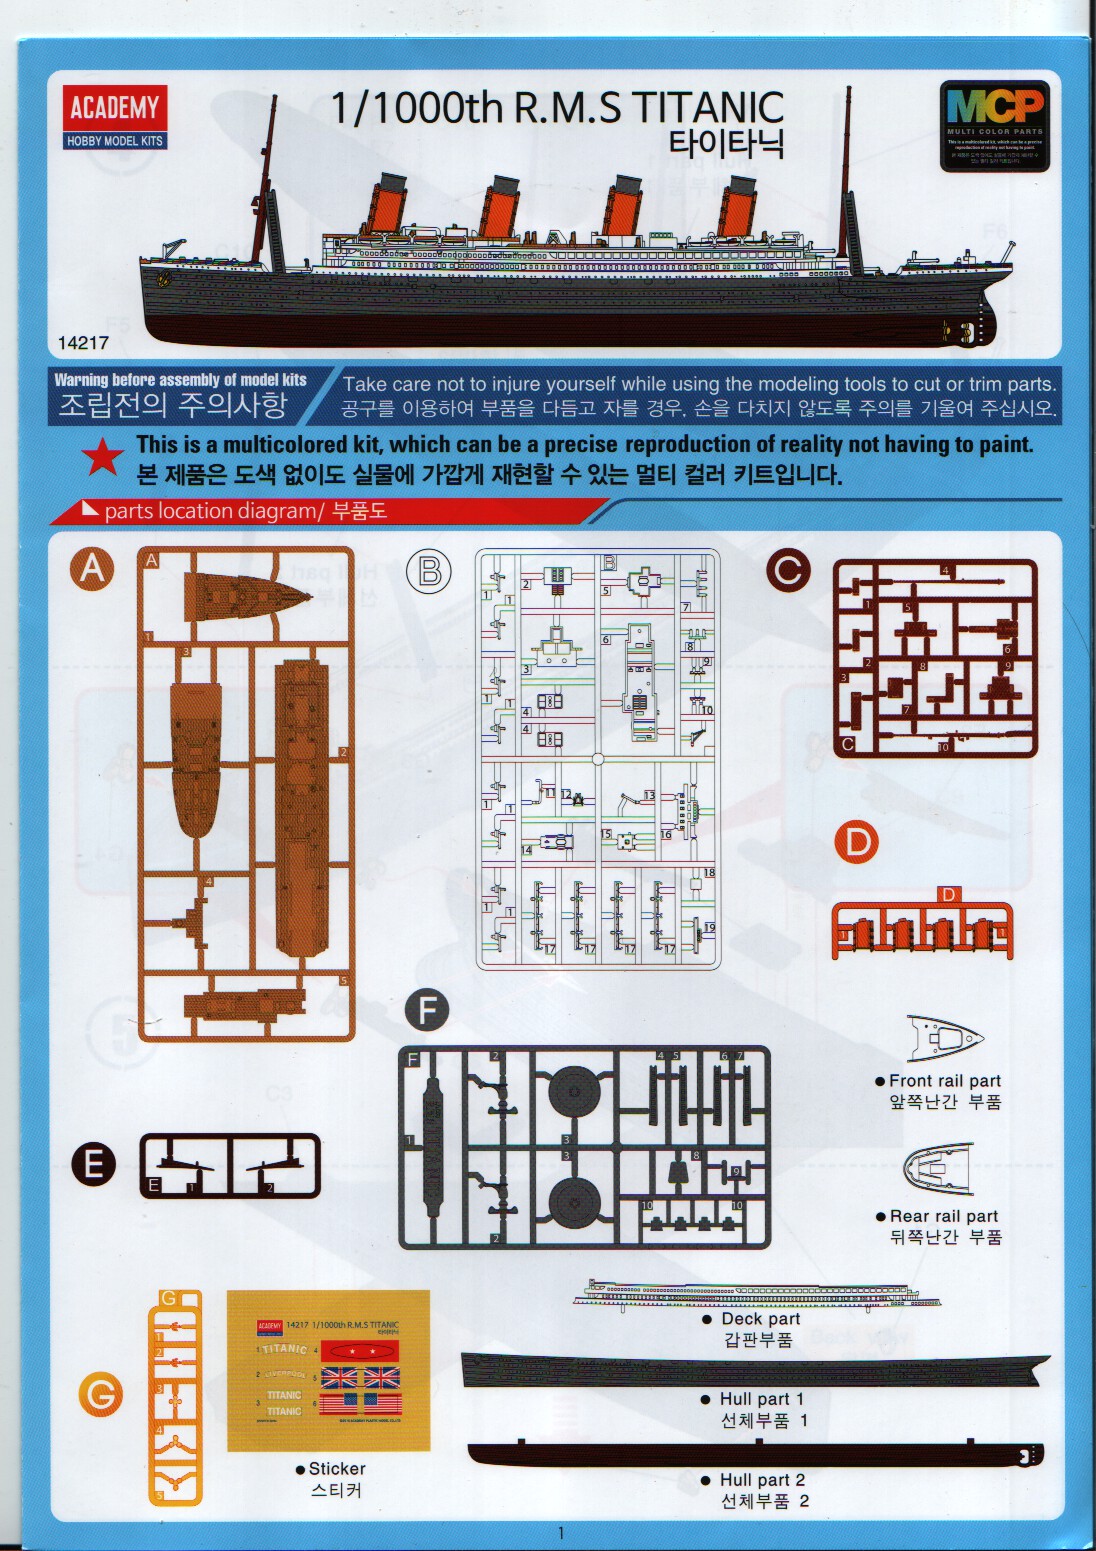 Academy 1/1000 R.M.S TITANIC Ship MCP Plastic Model Kit #14217 Multi Color Kit 